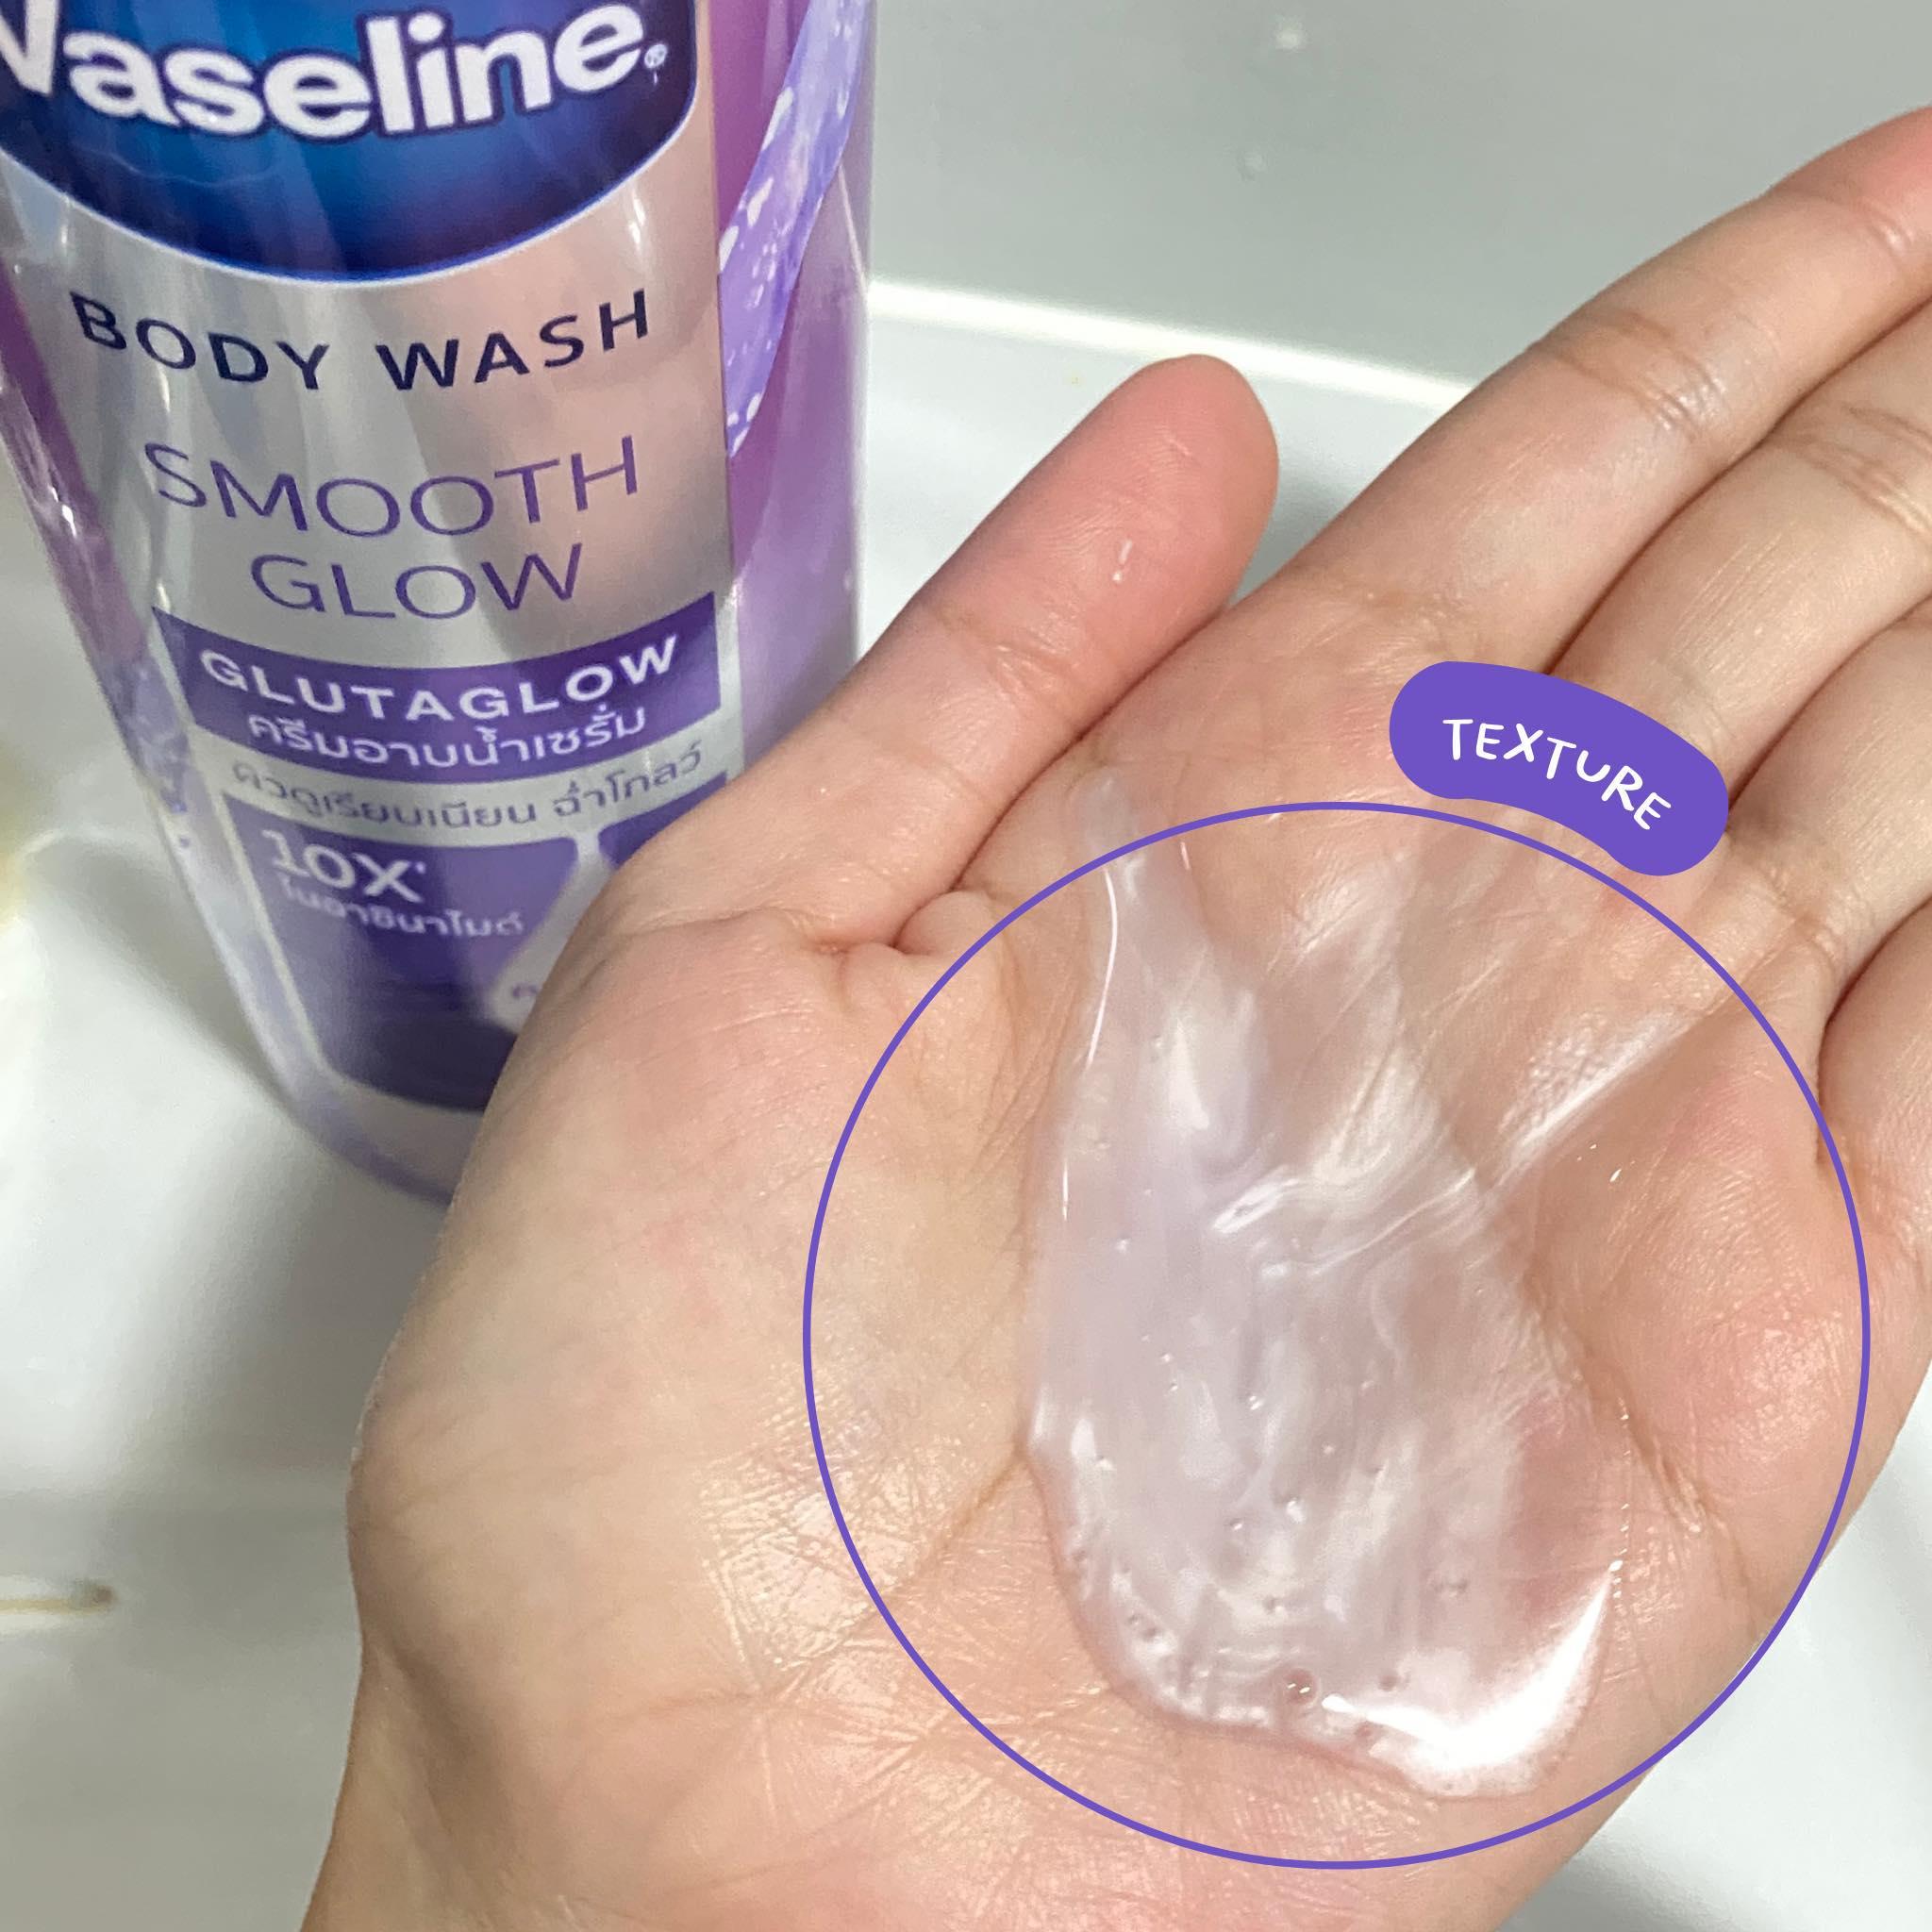 ภาพหน้าปก เซรั่มอาบน้ำ Vaseline Body Wash Smooth Glow Glutaglow เพื่อผิวสวยสุขภาพดี ที่:1